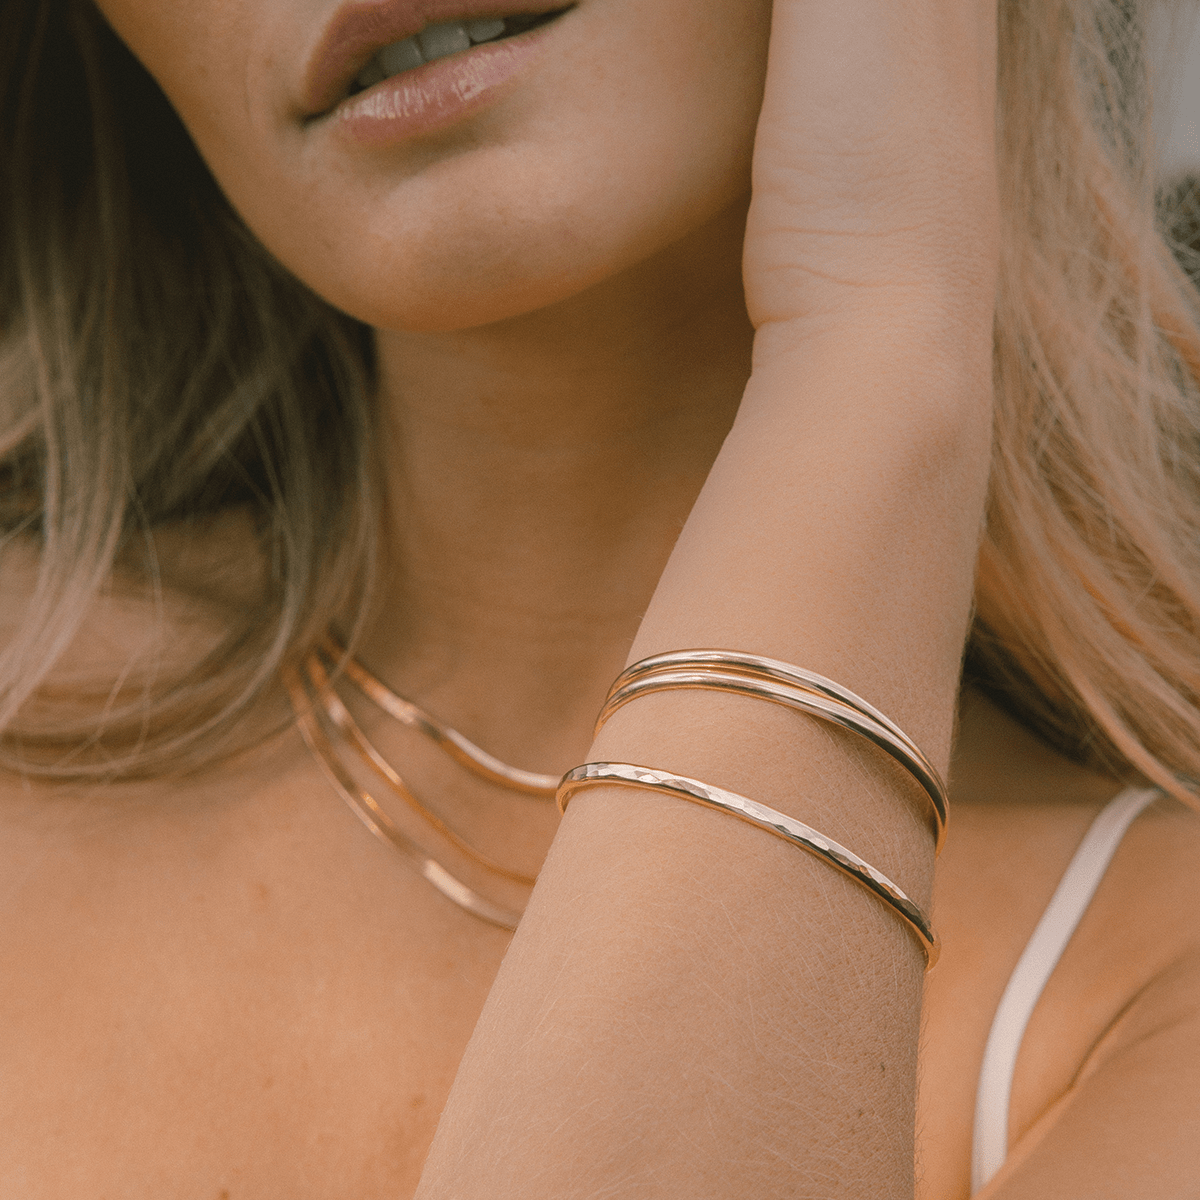 Omega 18k Gold Cuff Bracelet | Mens Gold Cuff Bracelets | Azuro Cuff Jewelry  – Azuro Republic